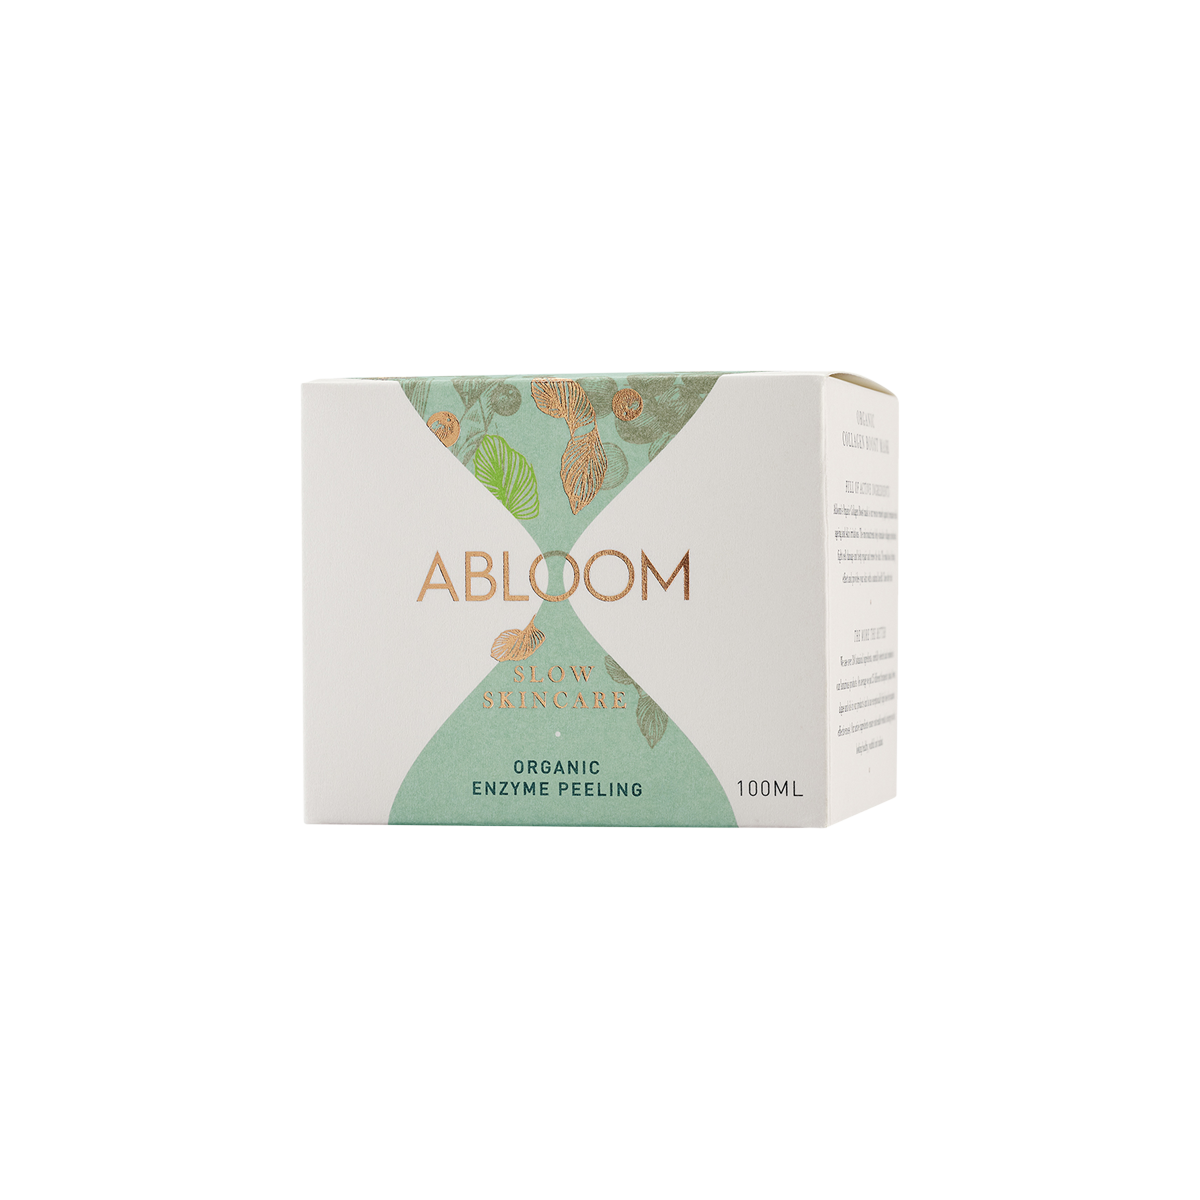 ABLOOM - Organic Enzyme Peeling